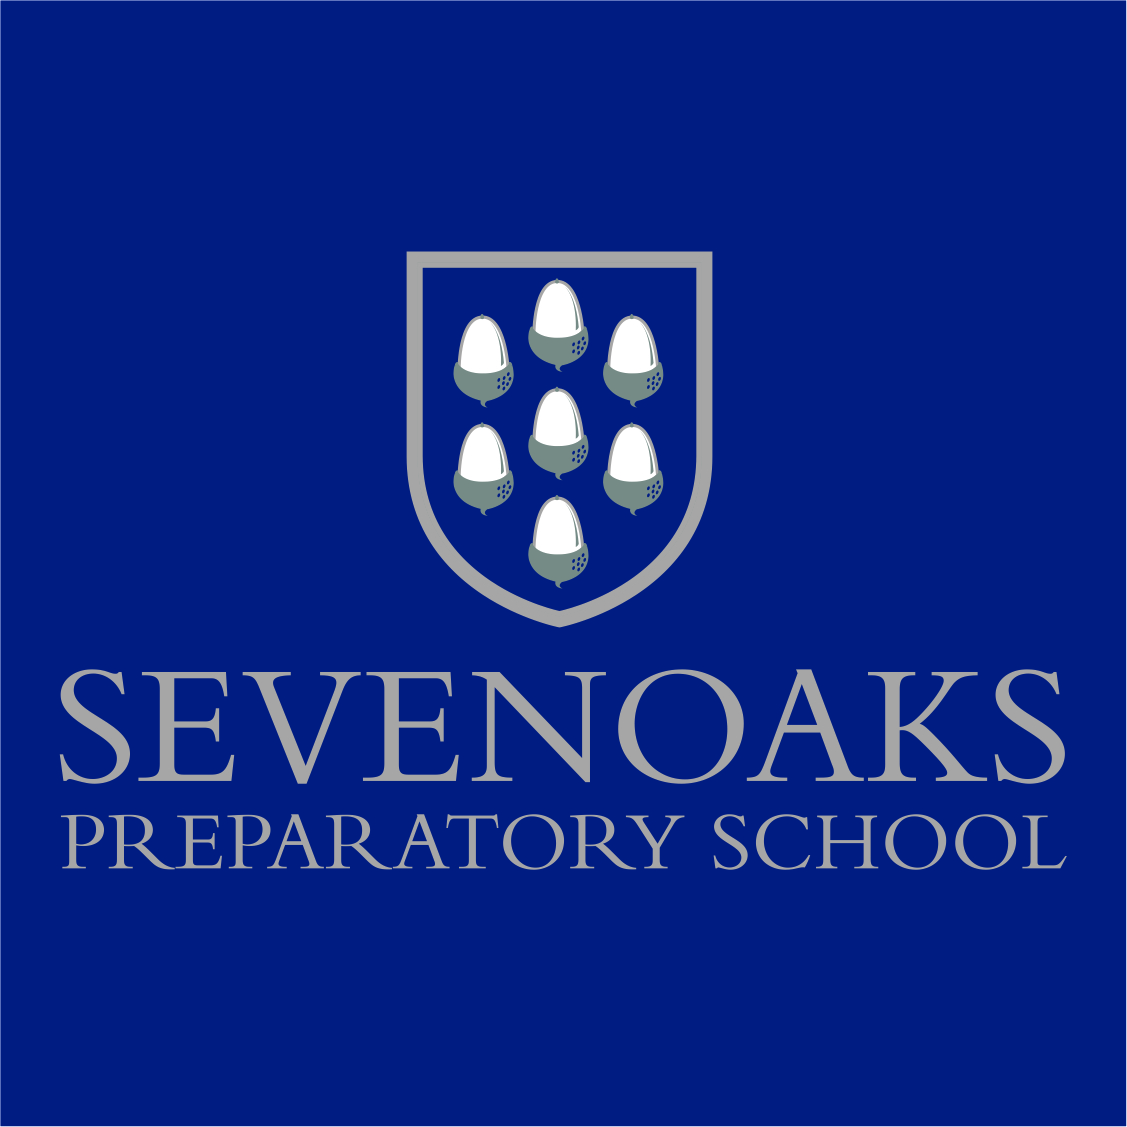 Sevenoaks Preparatory School Staff